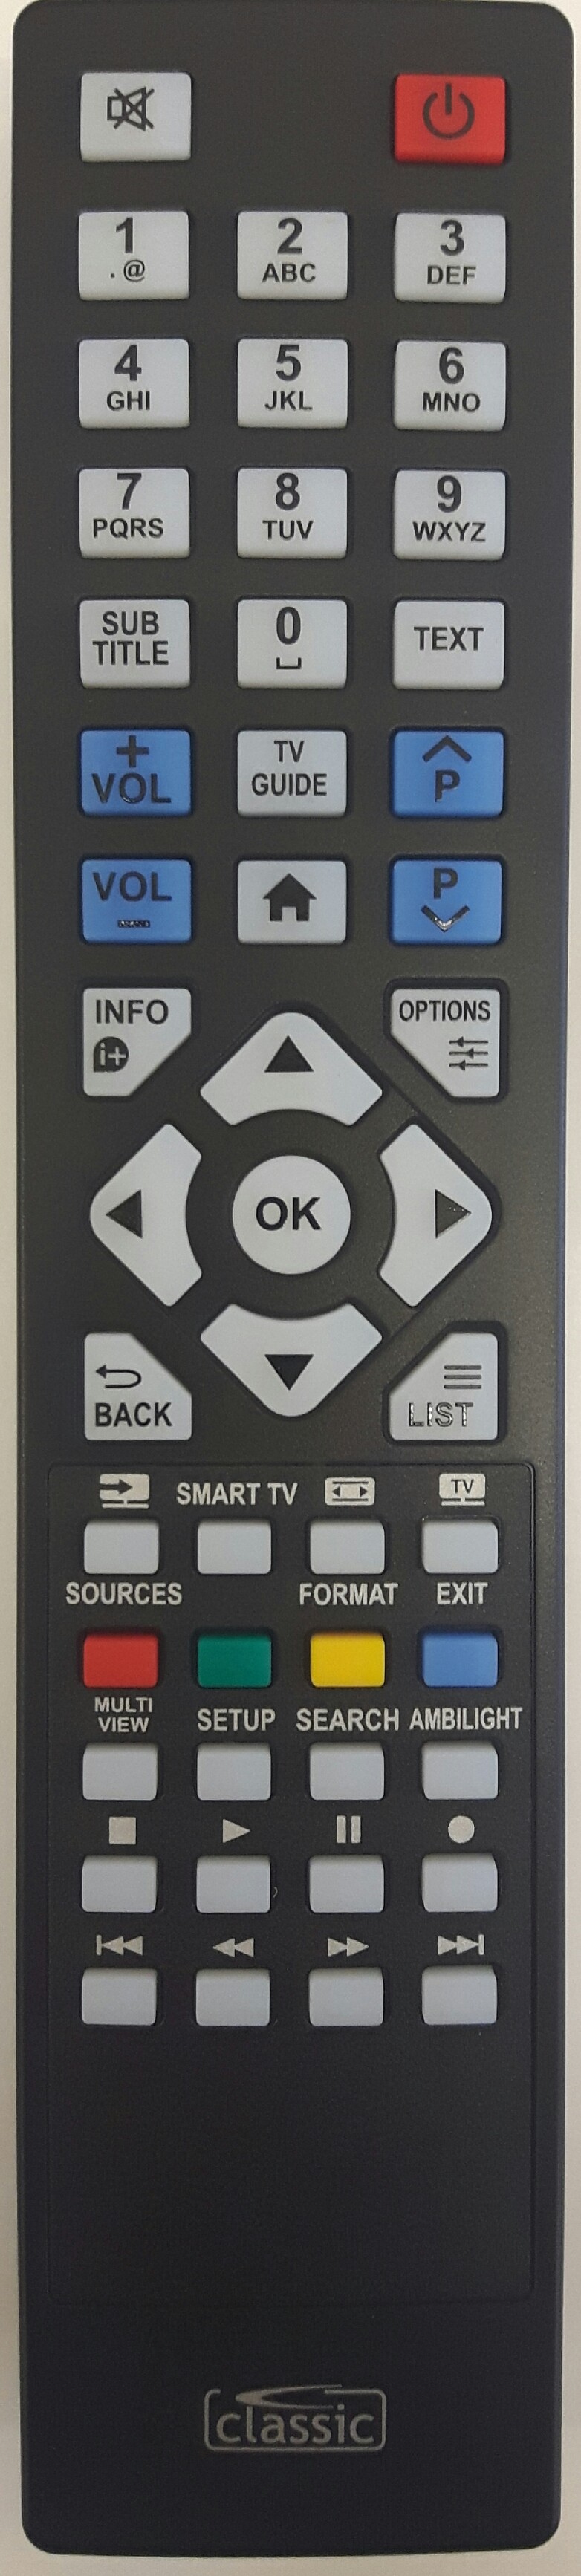 Philips 32 PHT4509/12 Remote Control Alternative